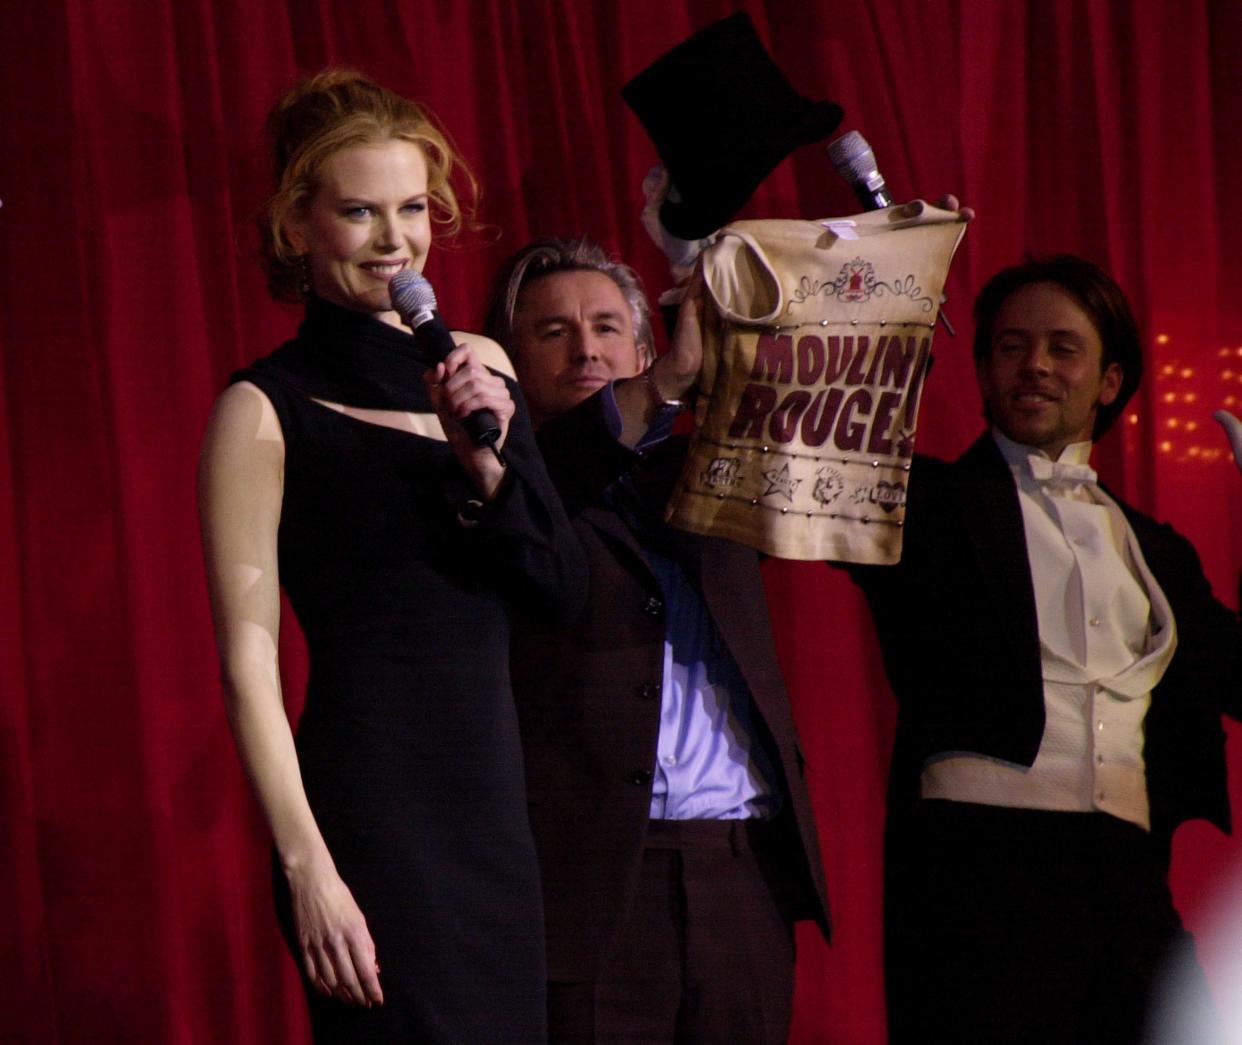 Las lesiones de Nicole Kidman durante el rodaje de 'Moulin Rouge' complicaron la producción de la película (Foto: J. Vespa/WireImage via Getty Images)